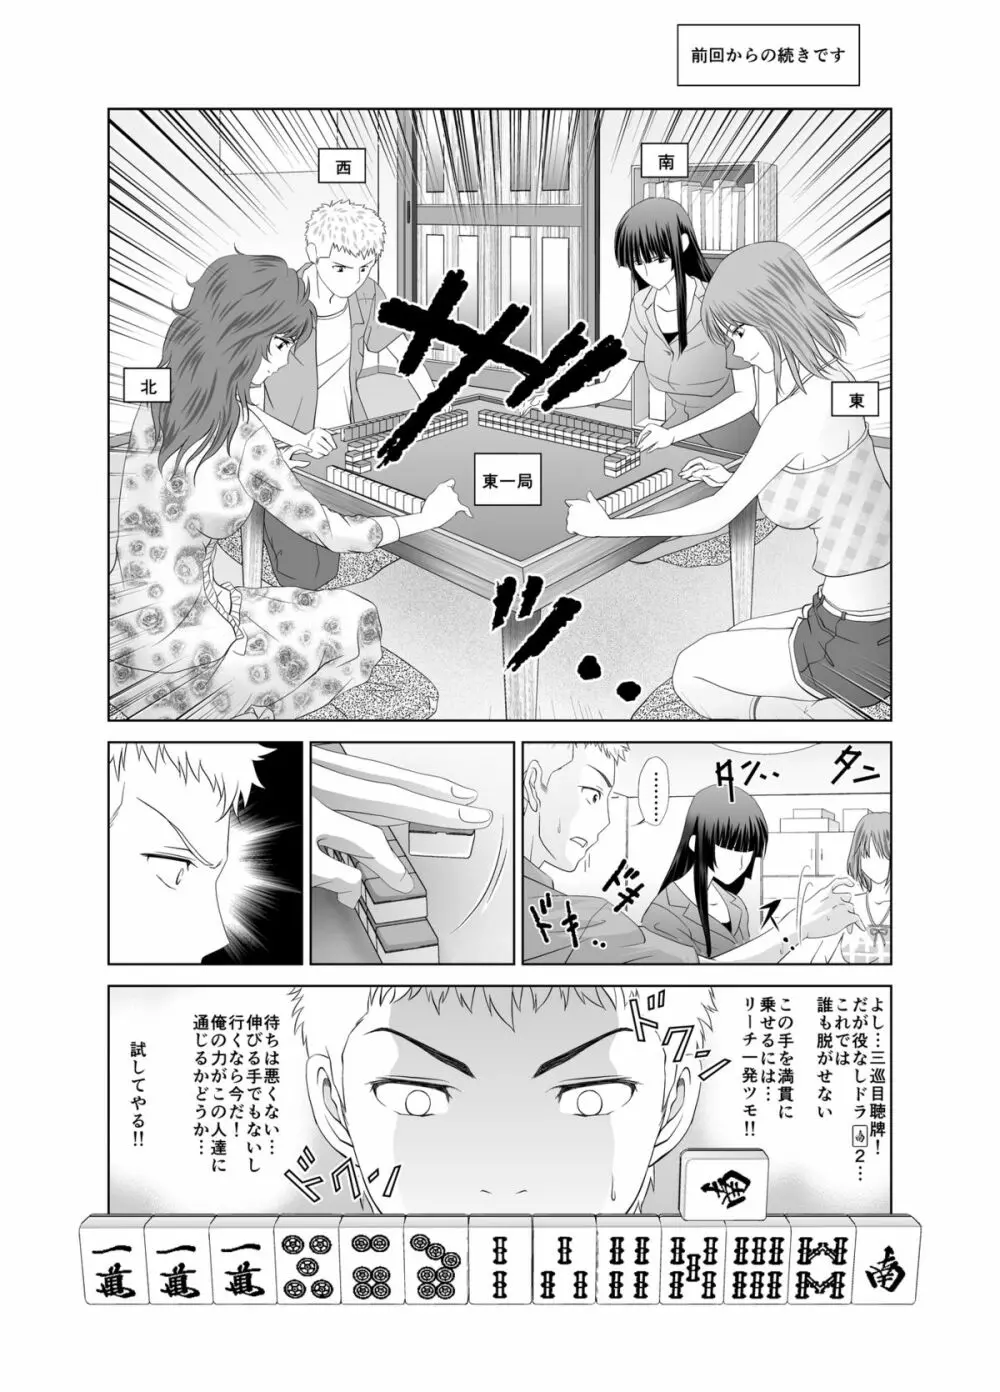 脱衣麻雀～漫画編～【完成版】 Page.13